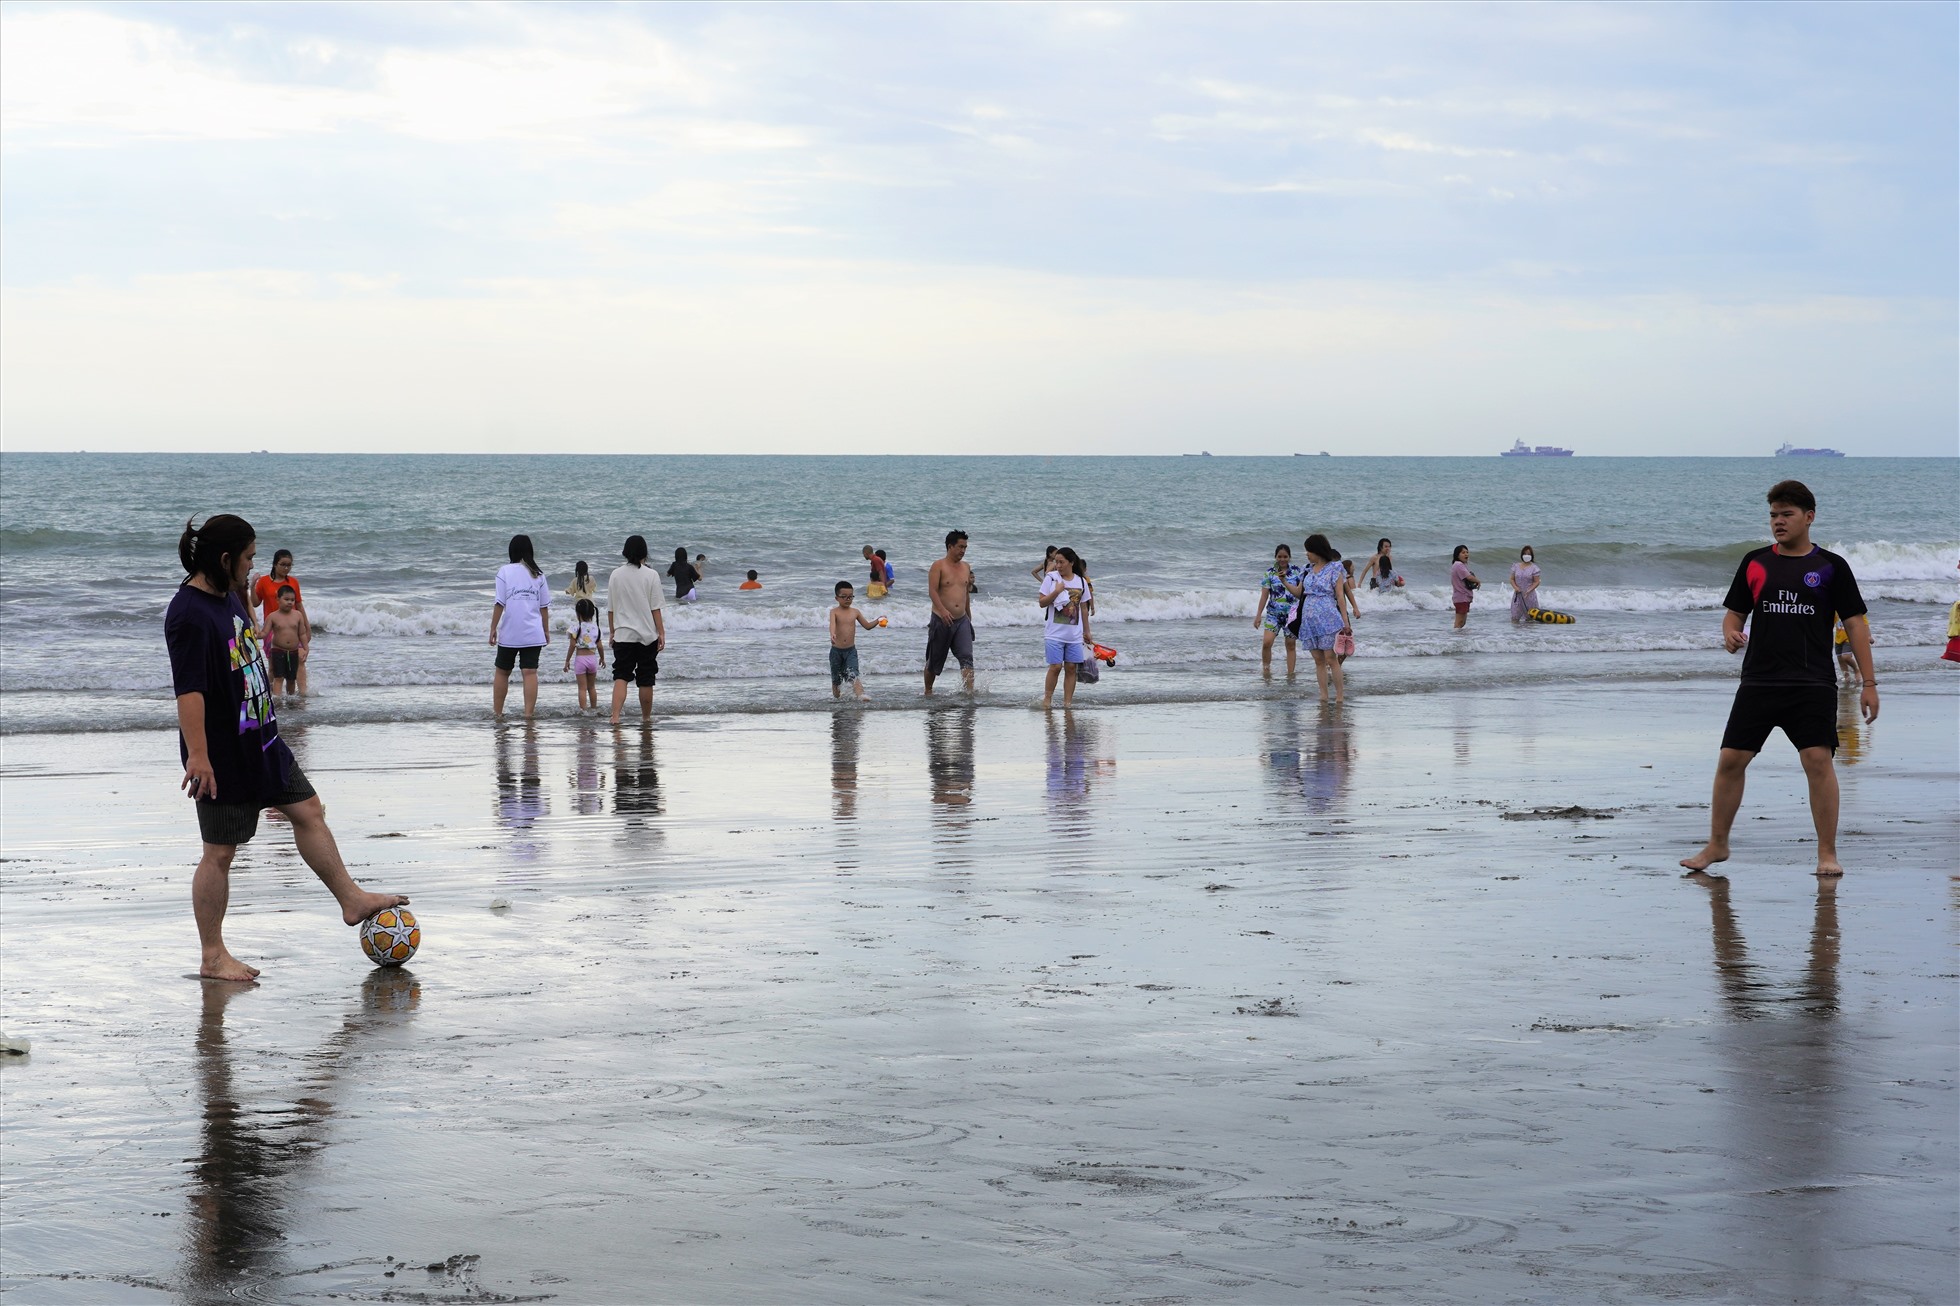 Nhiều du khách chơi những trò thể thao nhẹ làm nóng người trước khi xuống biển. Ảnh: Thành An